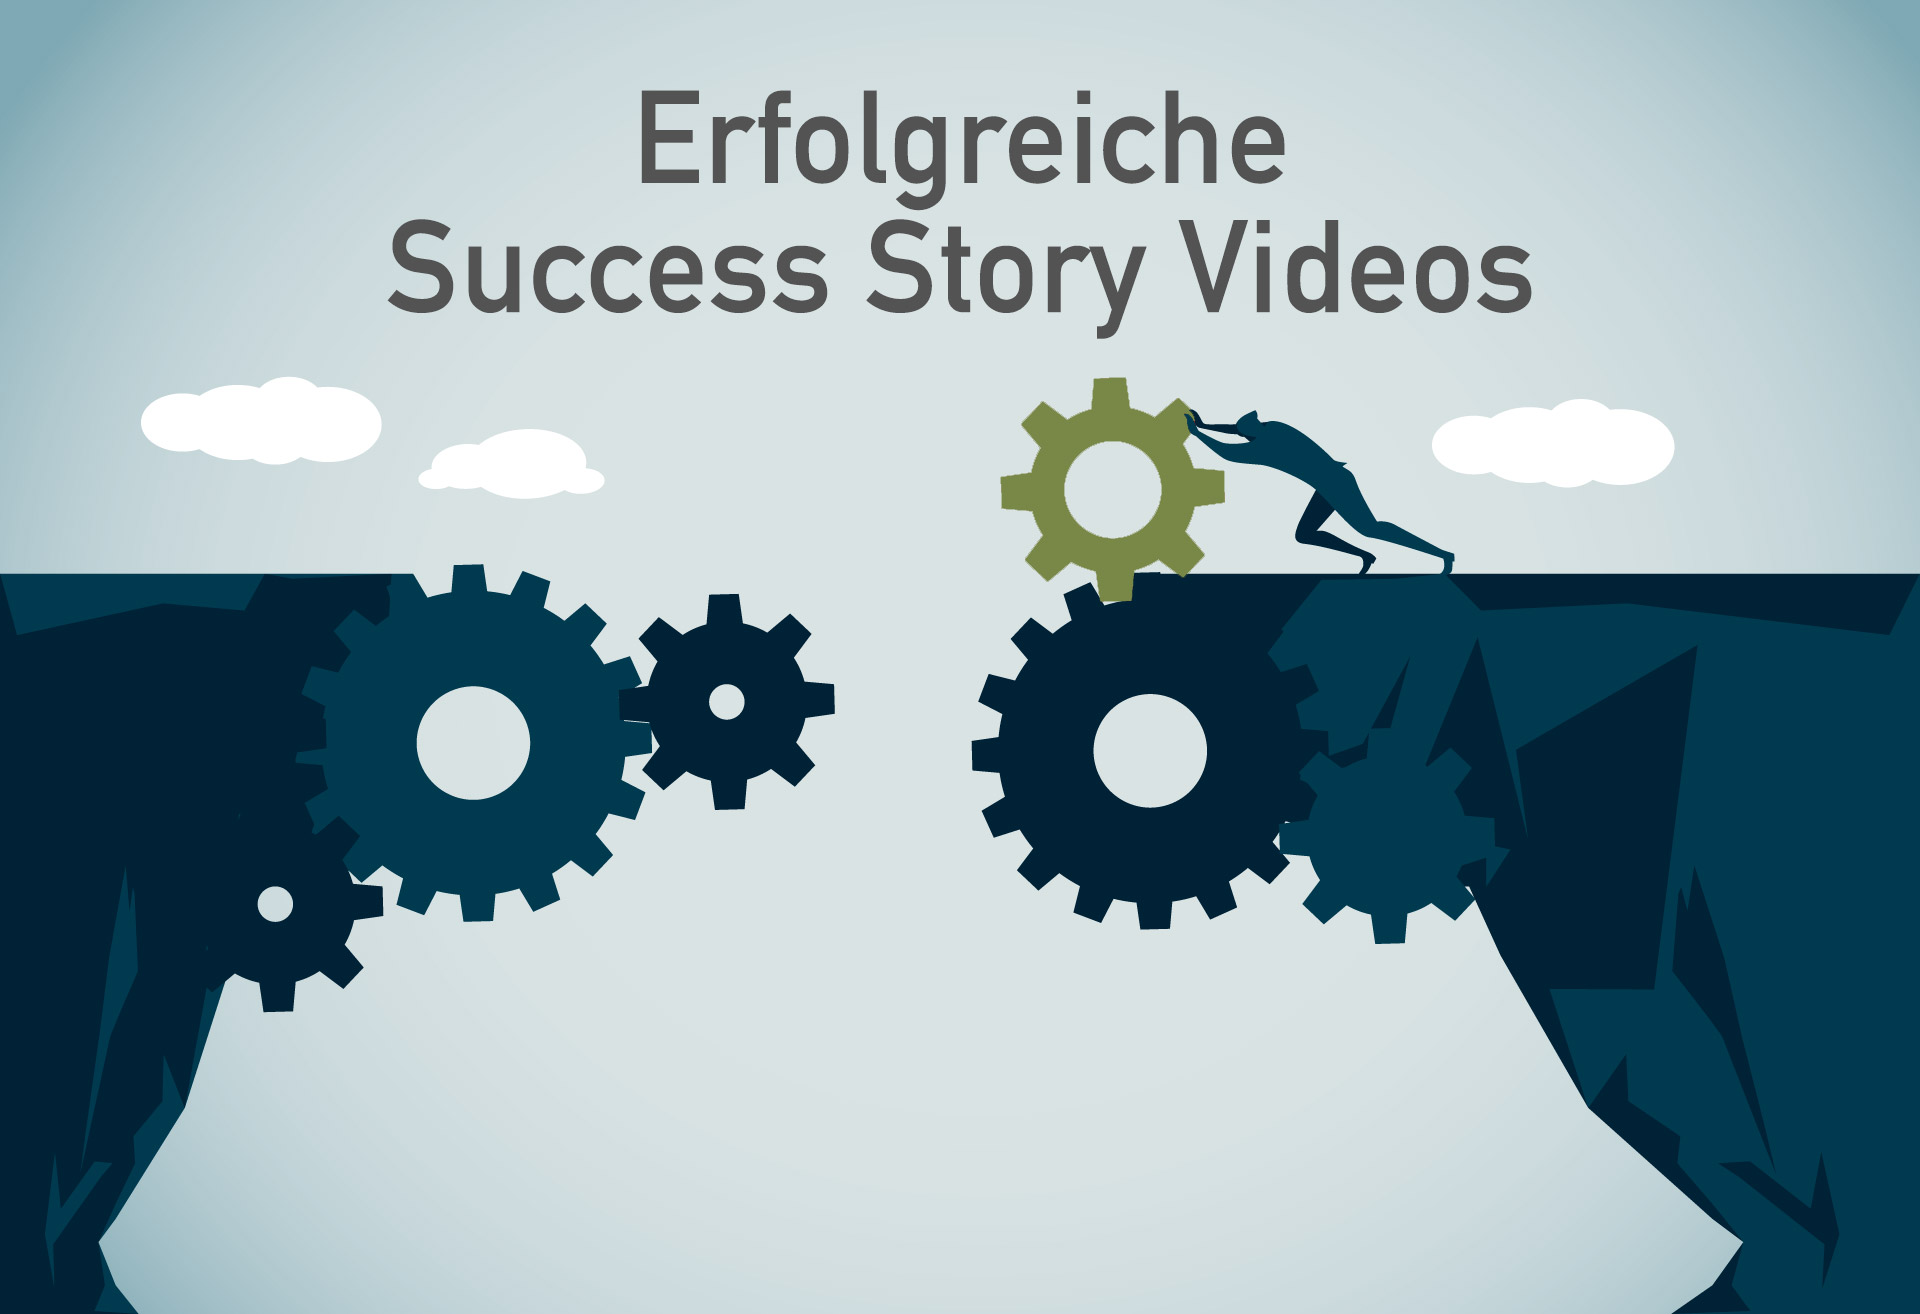 Sie wollen ein Success Story Video drehen? Dann achten Sie auf folgende Aspekte.